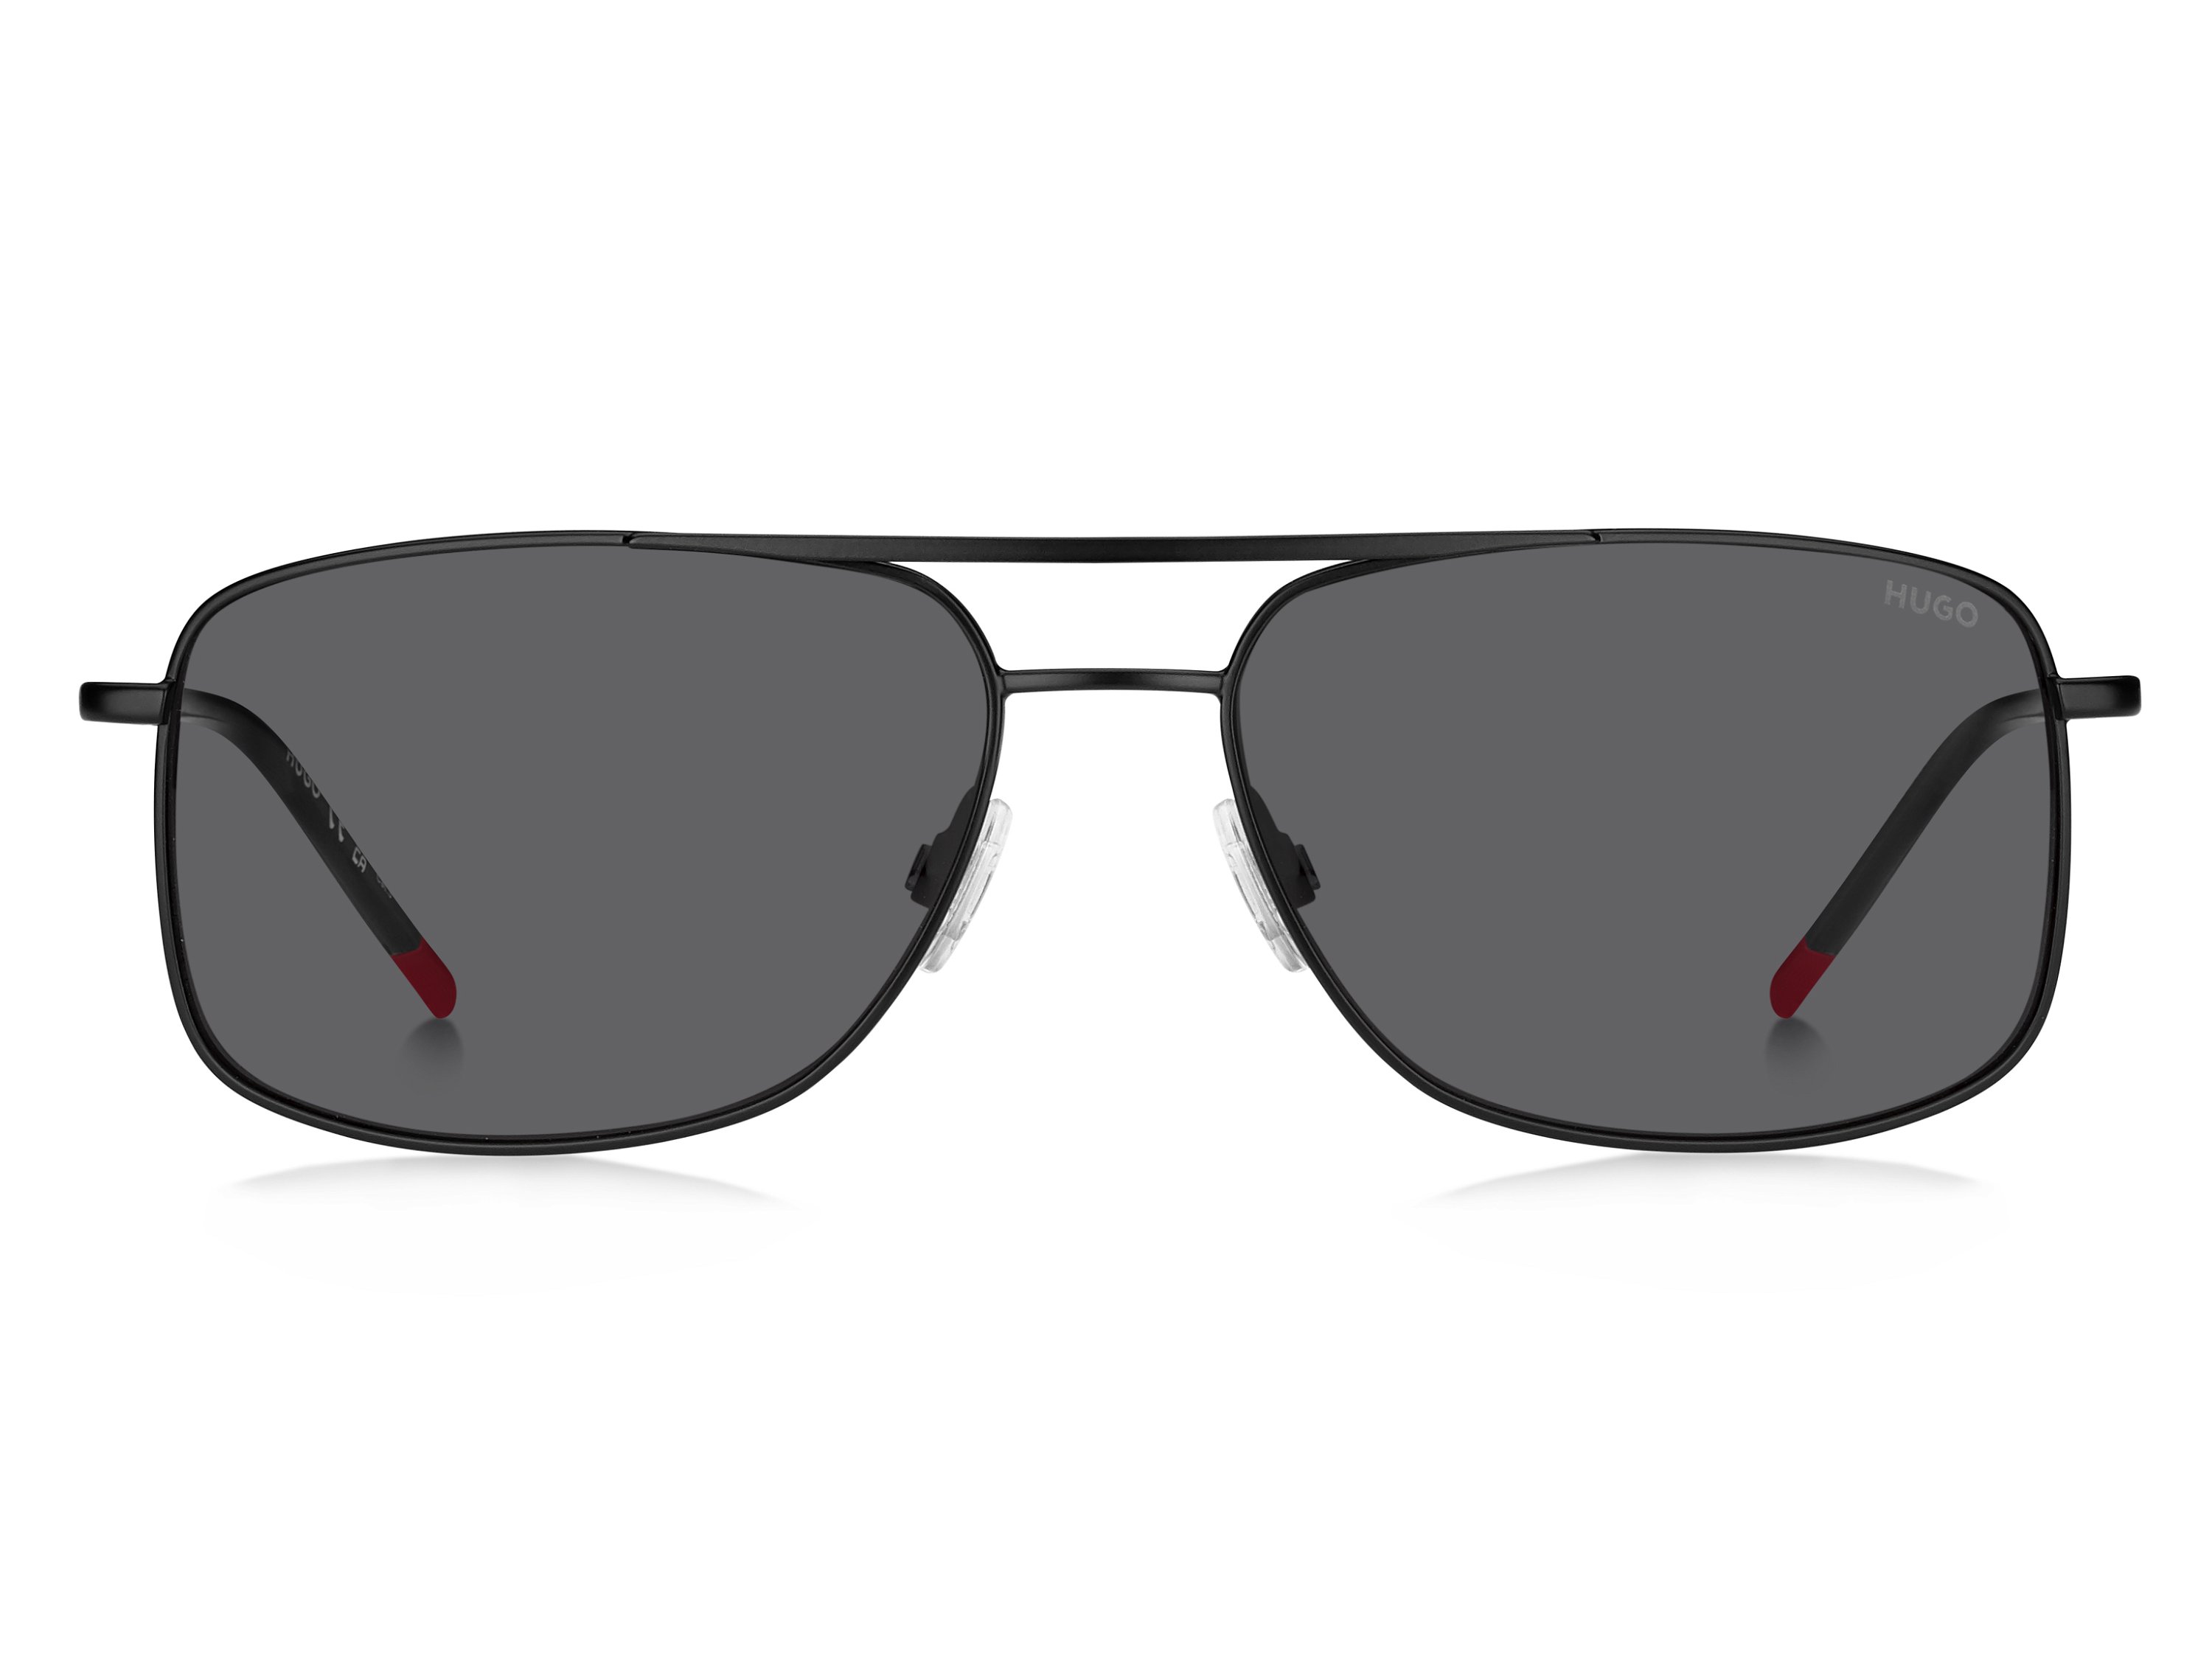 Das Bild zeigt die Sonnenbrille HG1287/S OIT von der Marke Hugo in schwarz/rot.